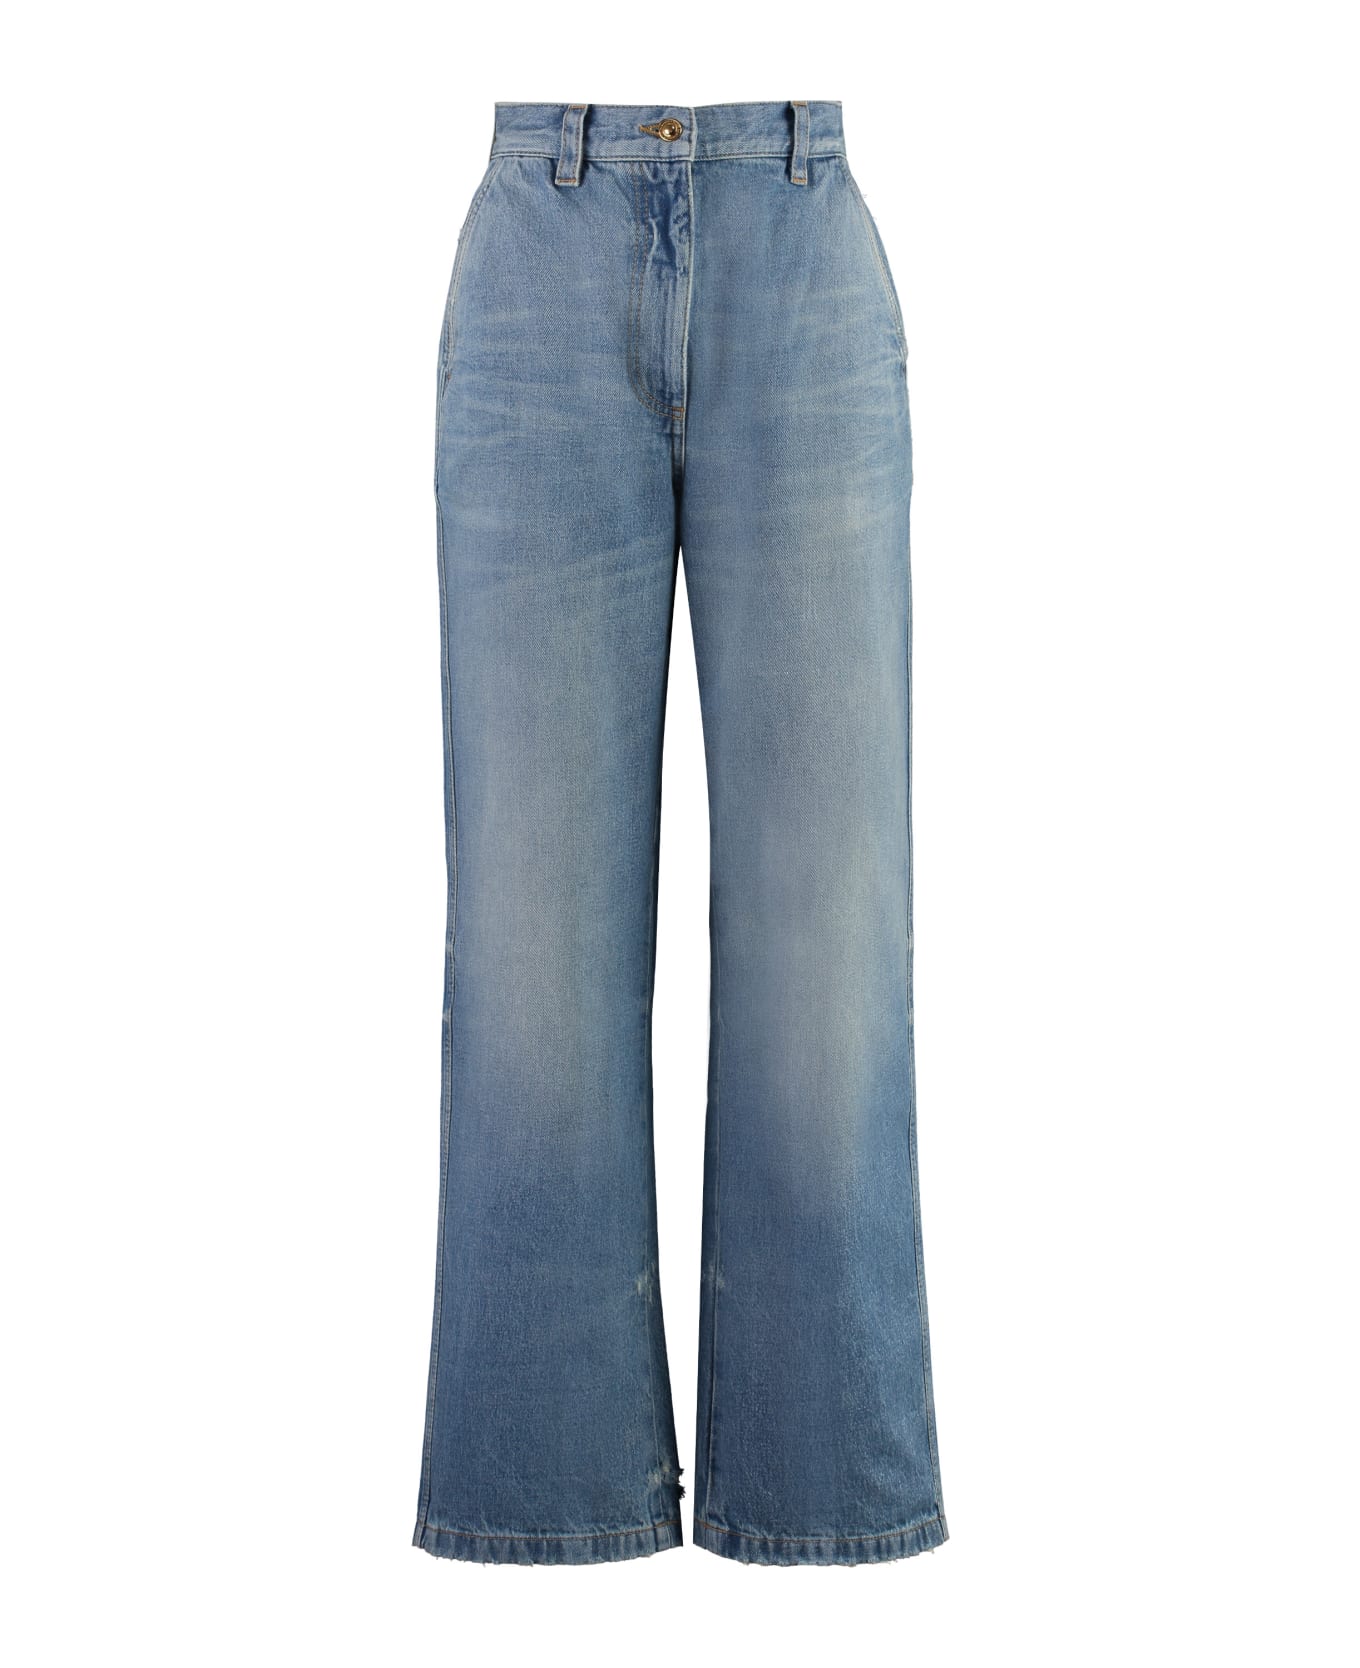 Palm Angels Light Blue Cotton Jeans - Denim